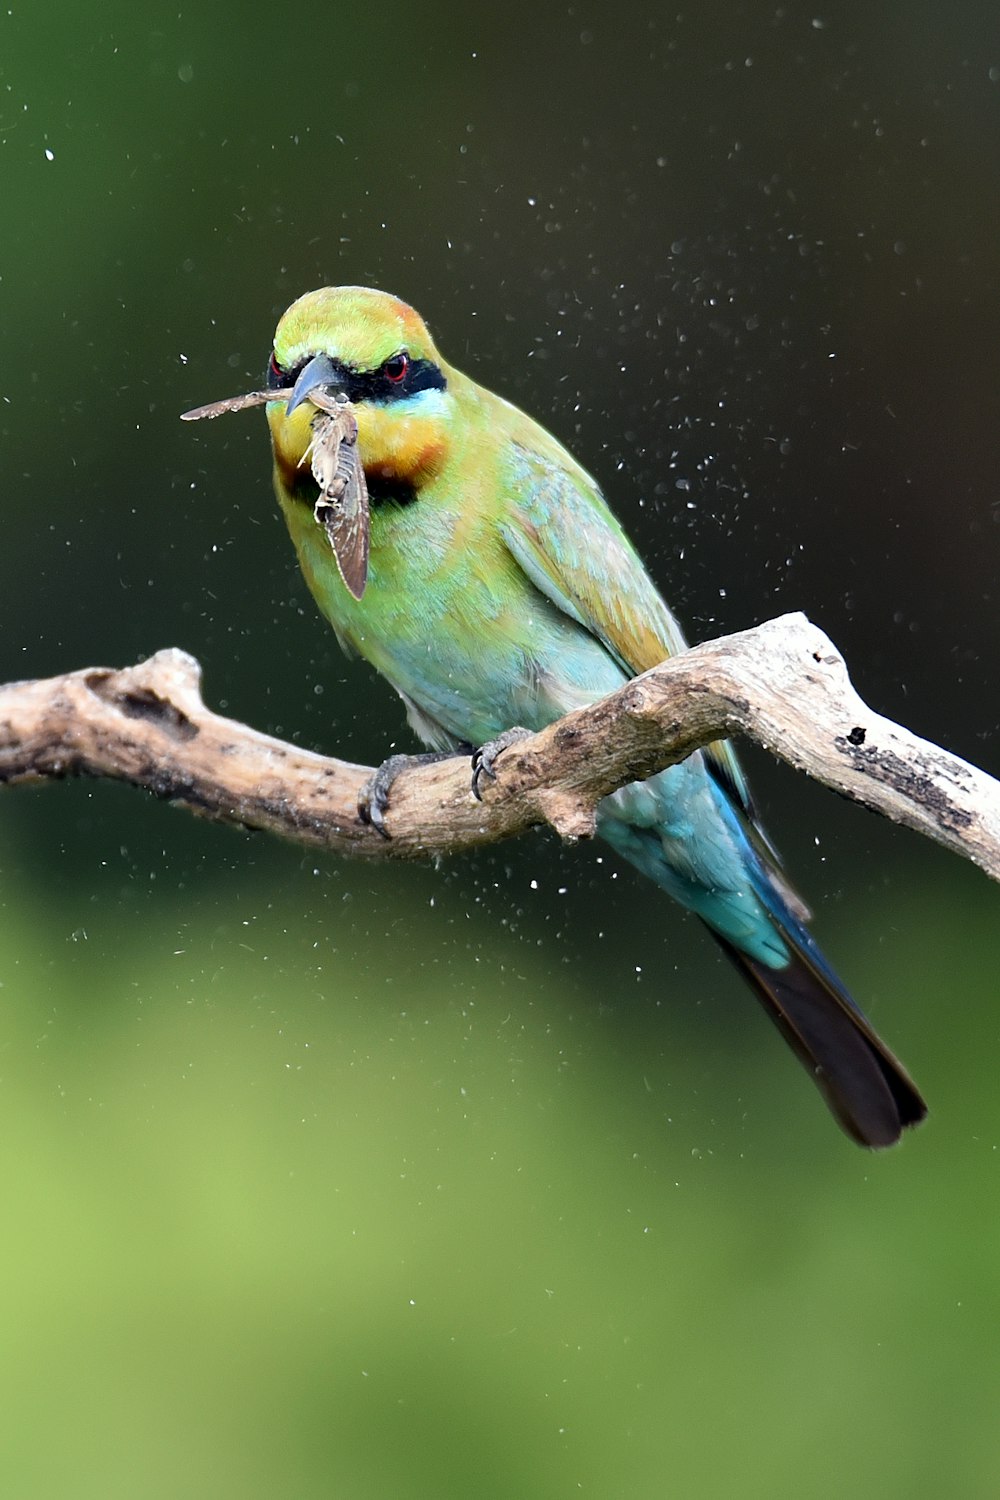 Zeitrafferfotografie eines grünen Vogels auf einem Ast